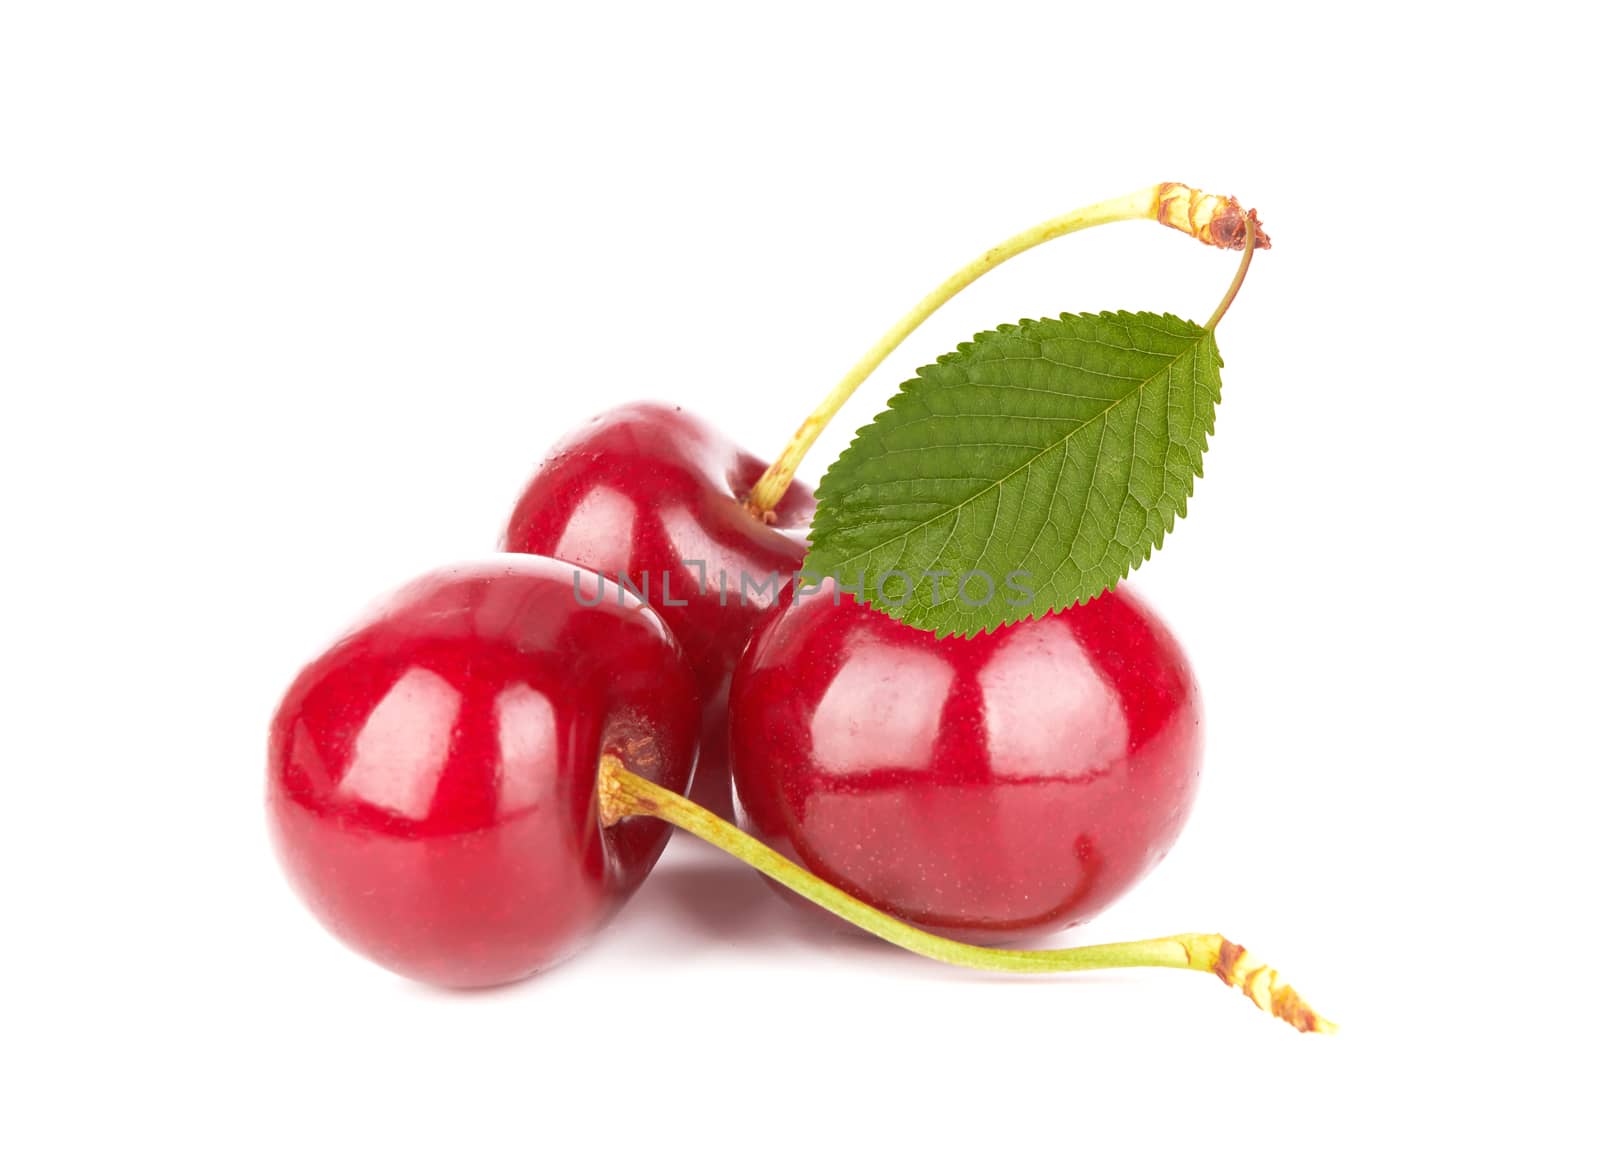 Sweet cherries by pioneer111